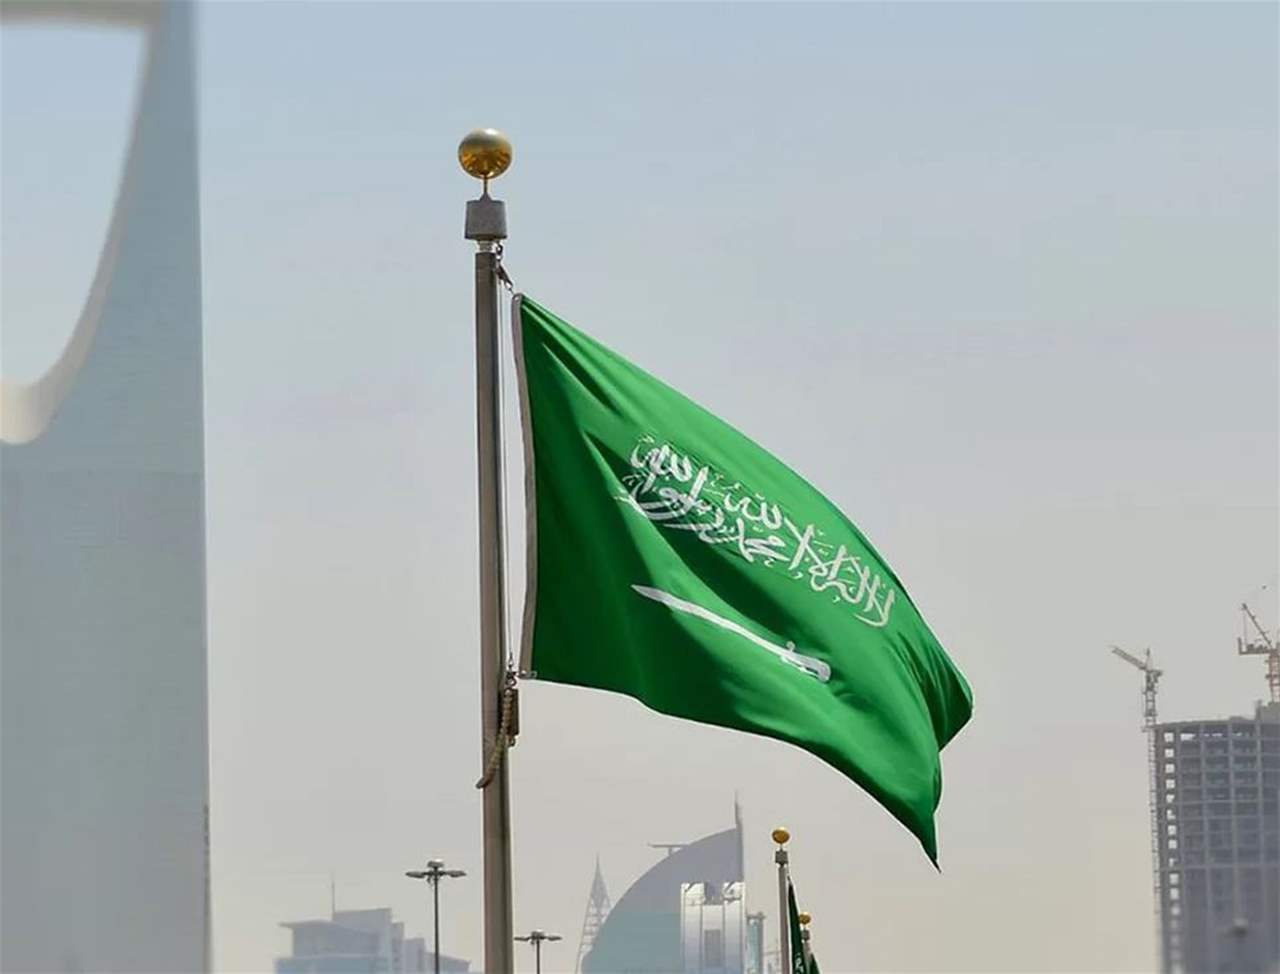 مجلس الوزراء السعودي: المملكة تتطلع لمرحلة جديدة من العلاقات مع إيران مبنية على المصالح المشتركة والاحترام المتبادل 